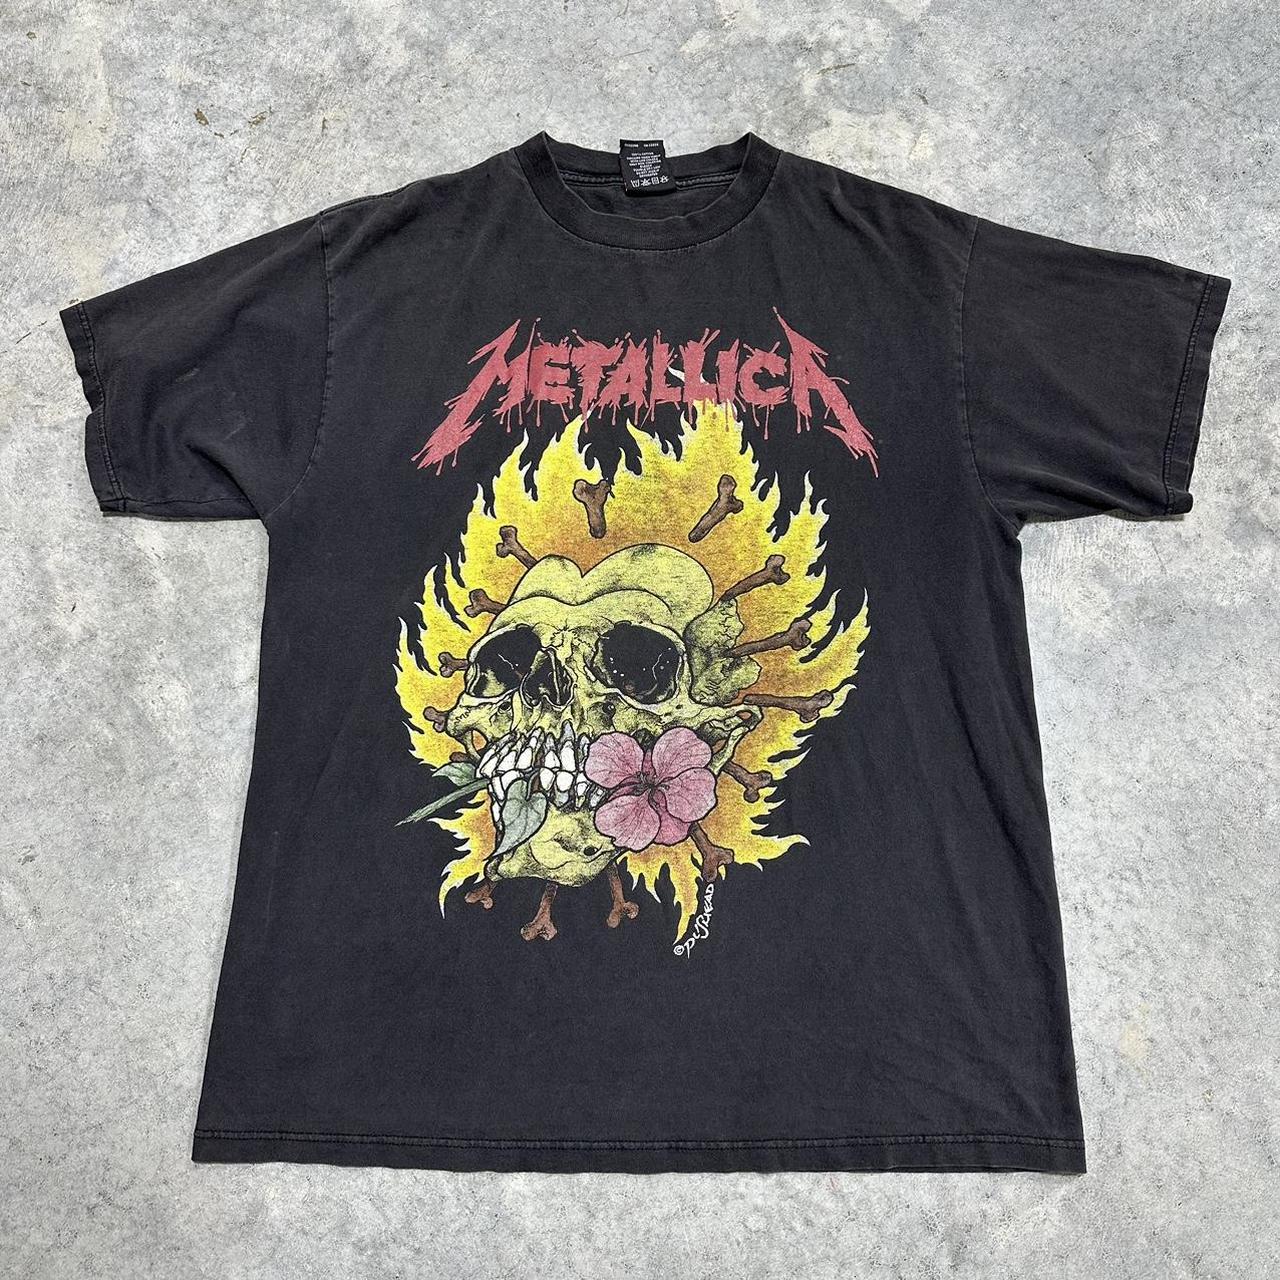 1990s Metallica pushead flaming skull shirt rare... - Depop